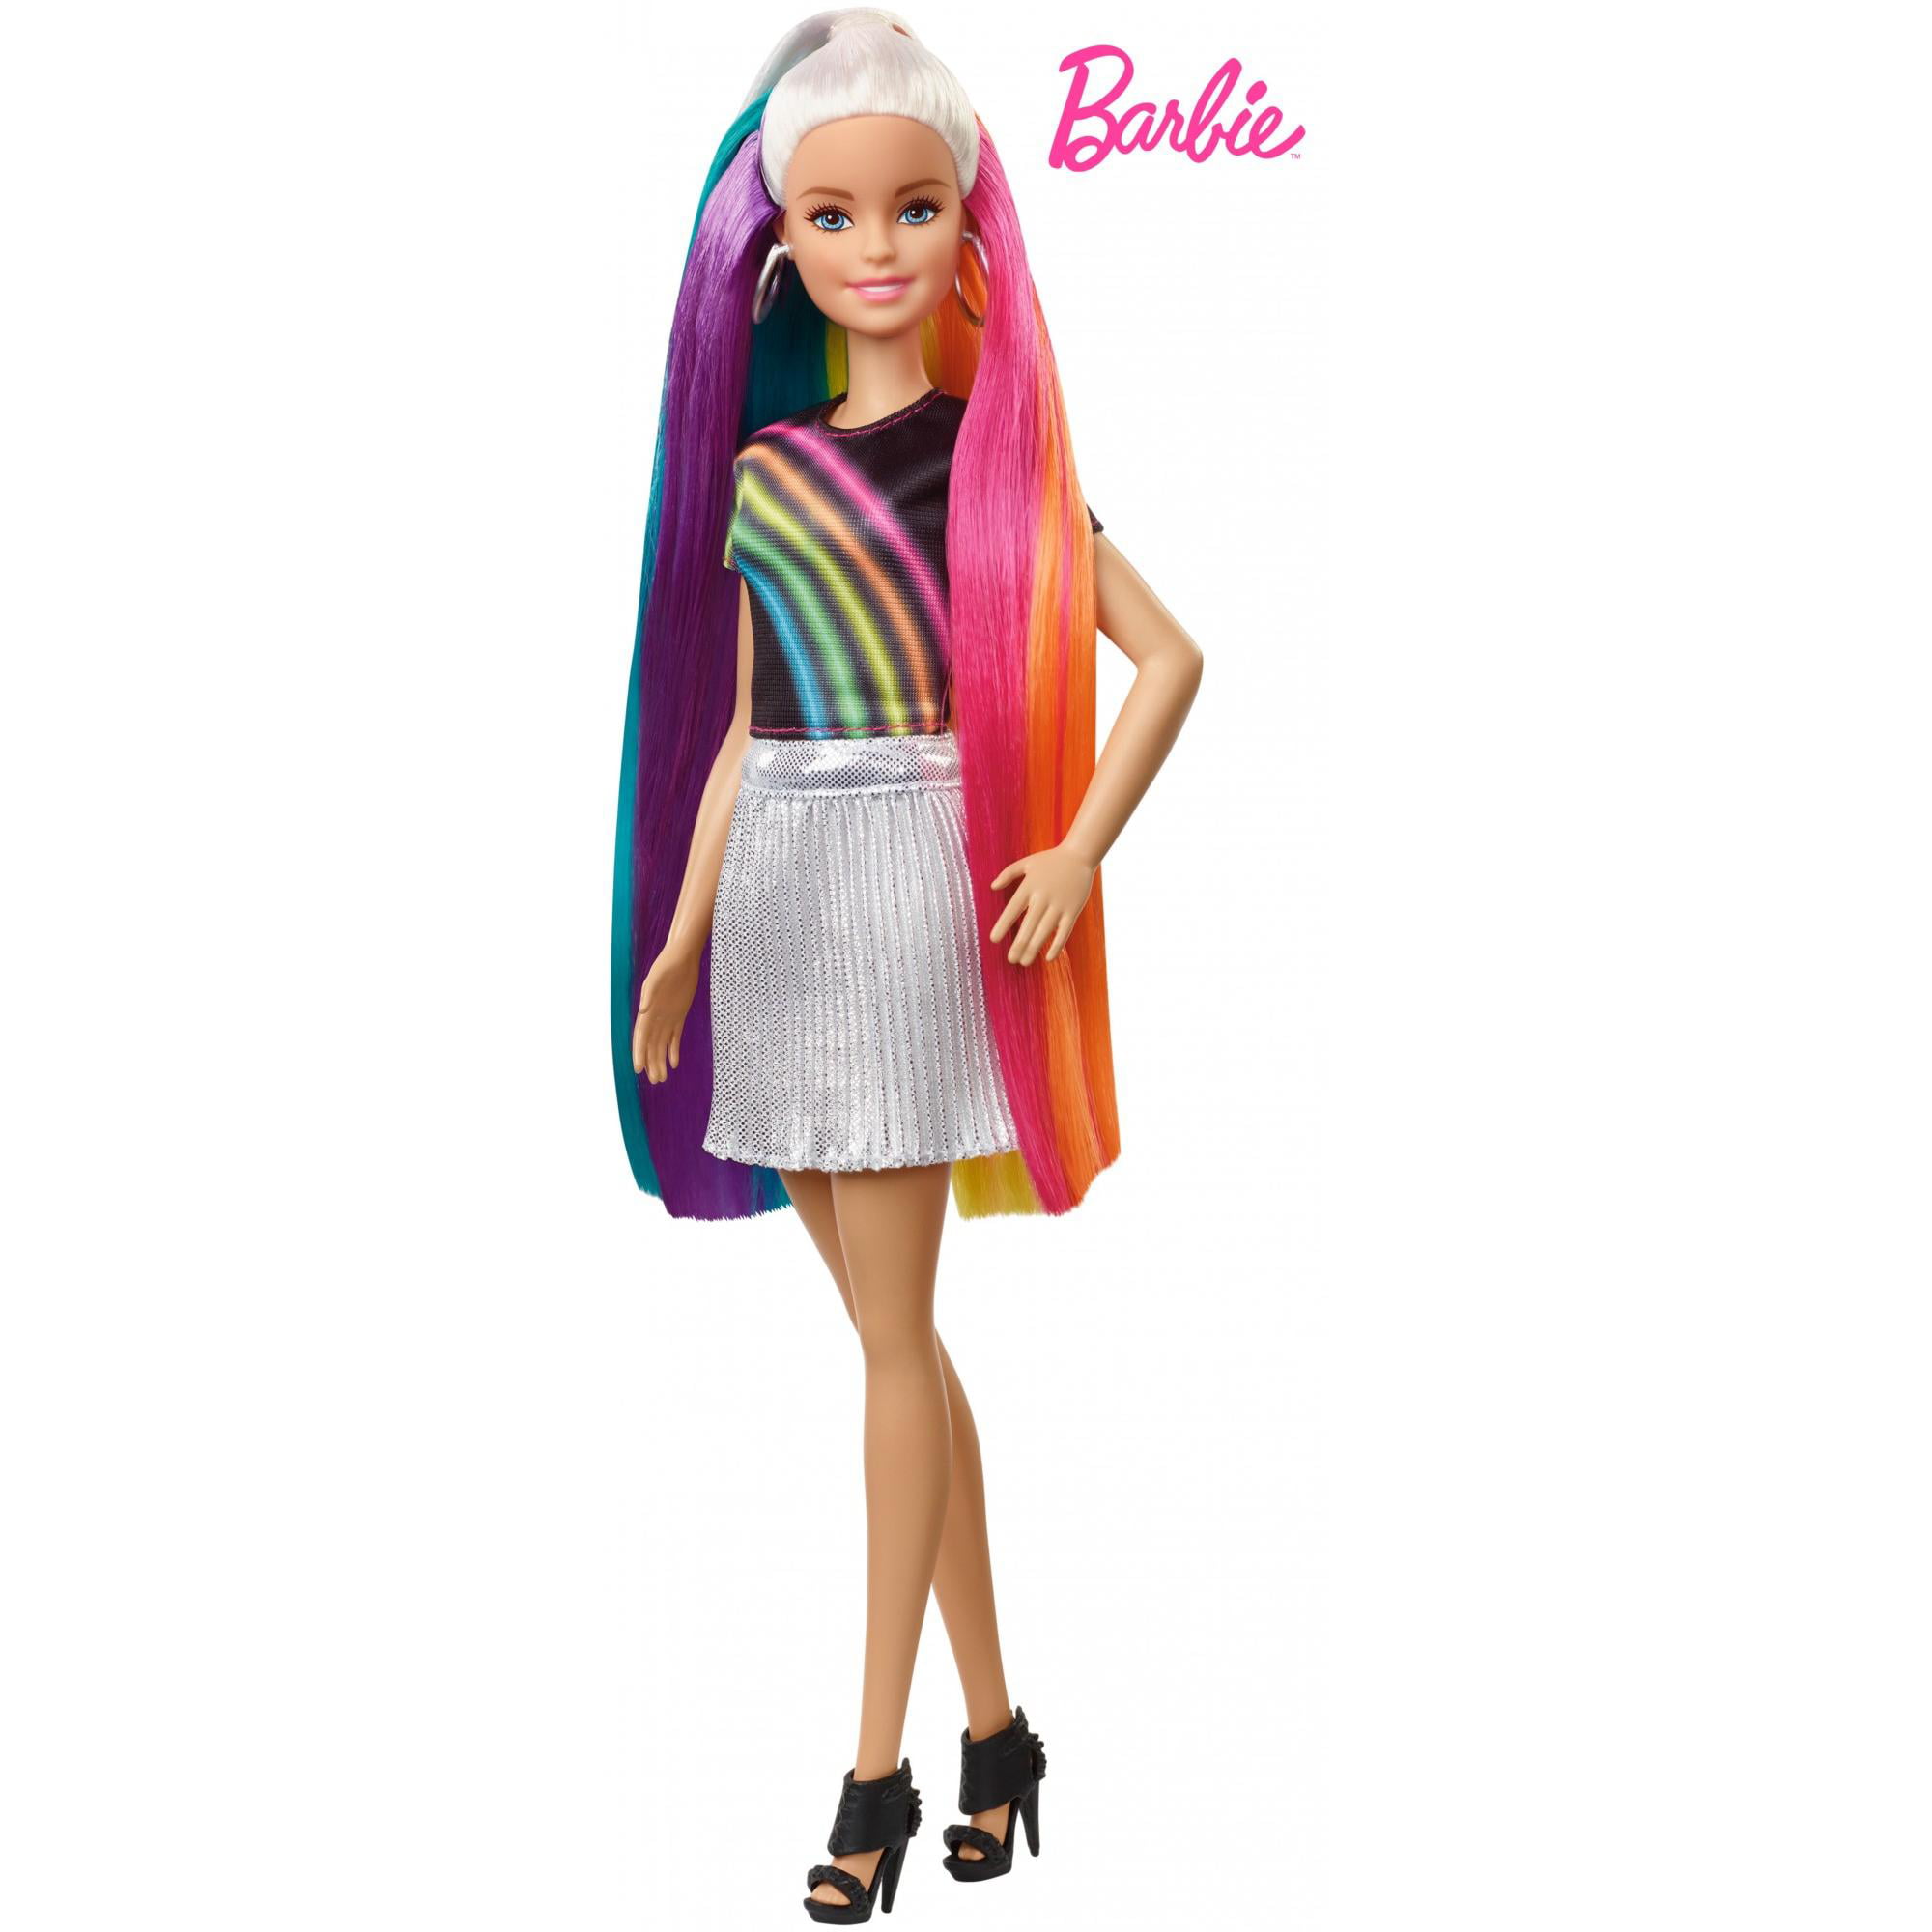 Barbie Rainbow Sparkle Hair Doll, Blonde, with Accessories – BrickSeek